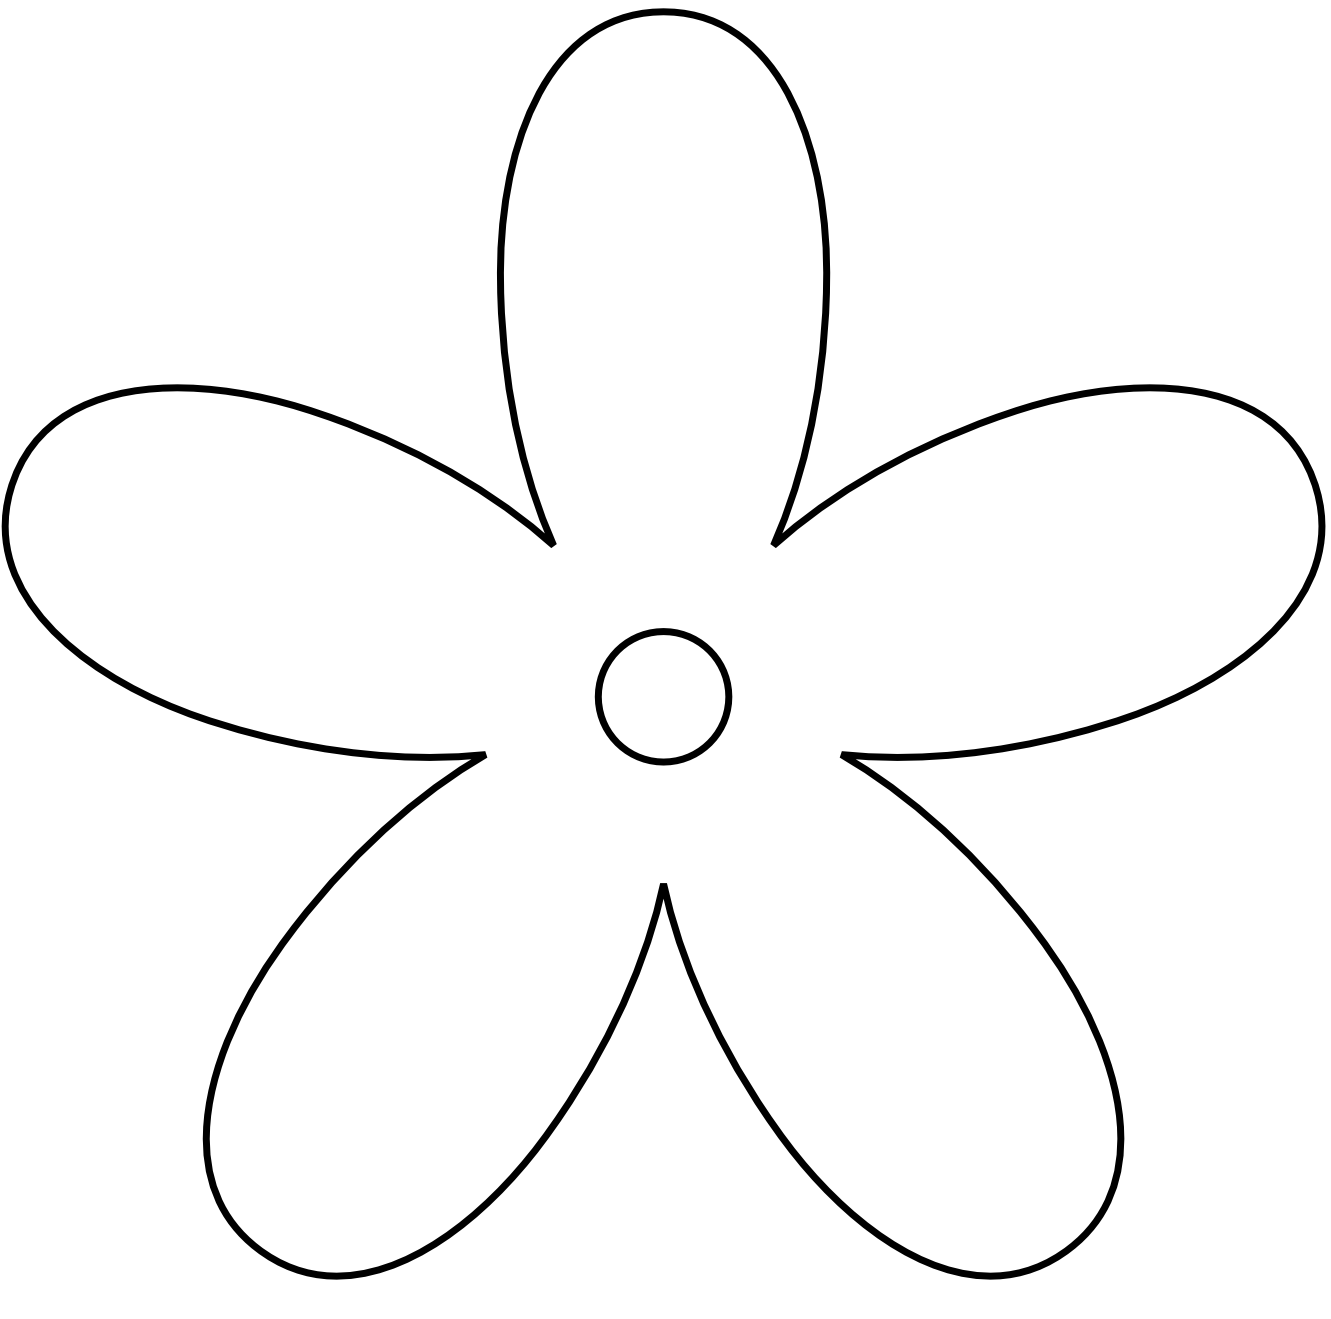 Clip Art: Retro Flower 8 Black White Line Art ...